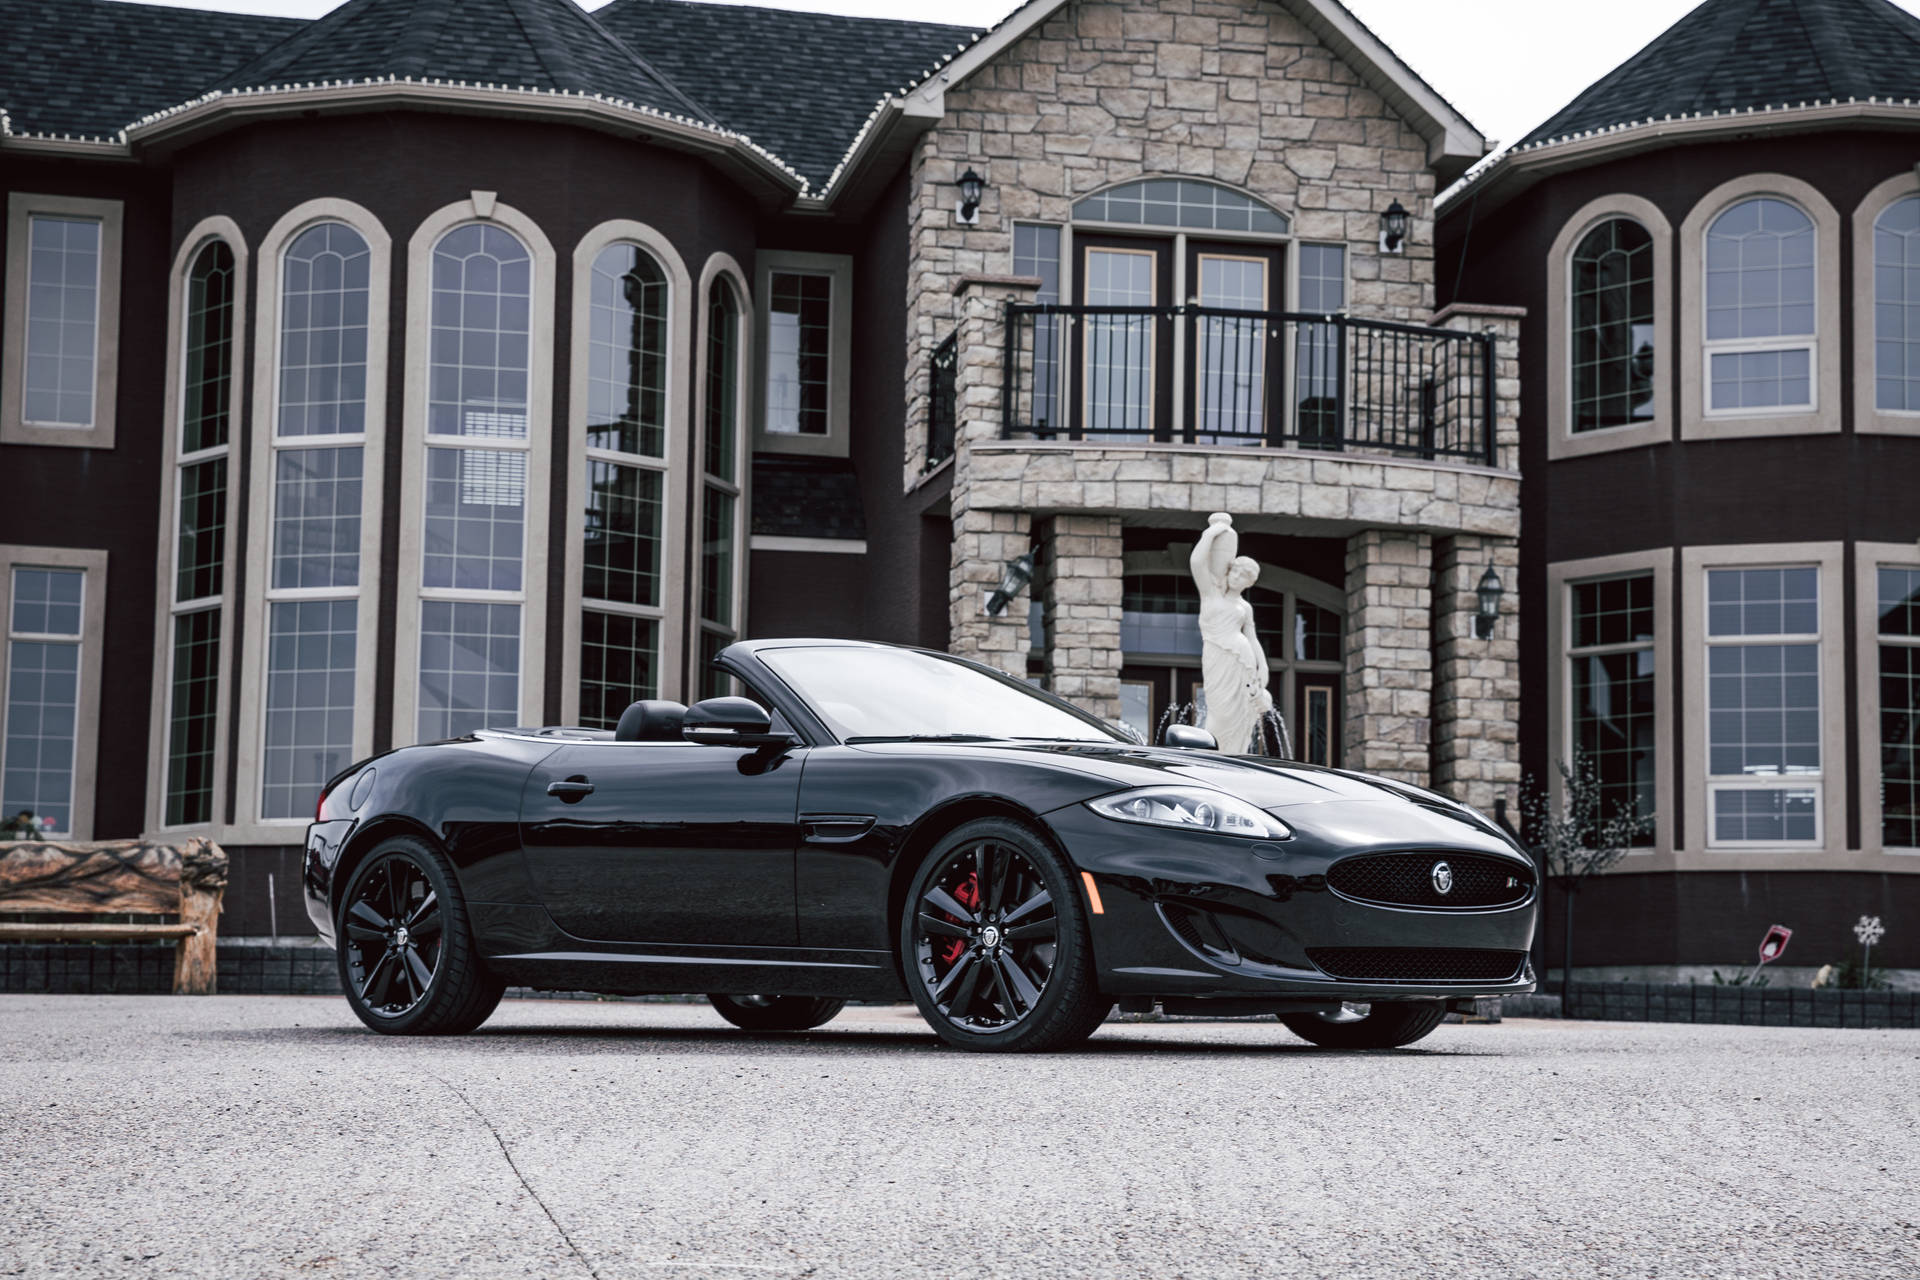 Black Convertible Maserati At Mansion